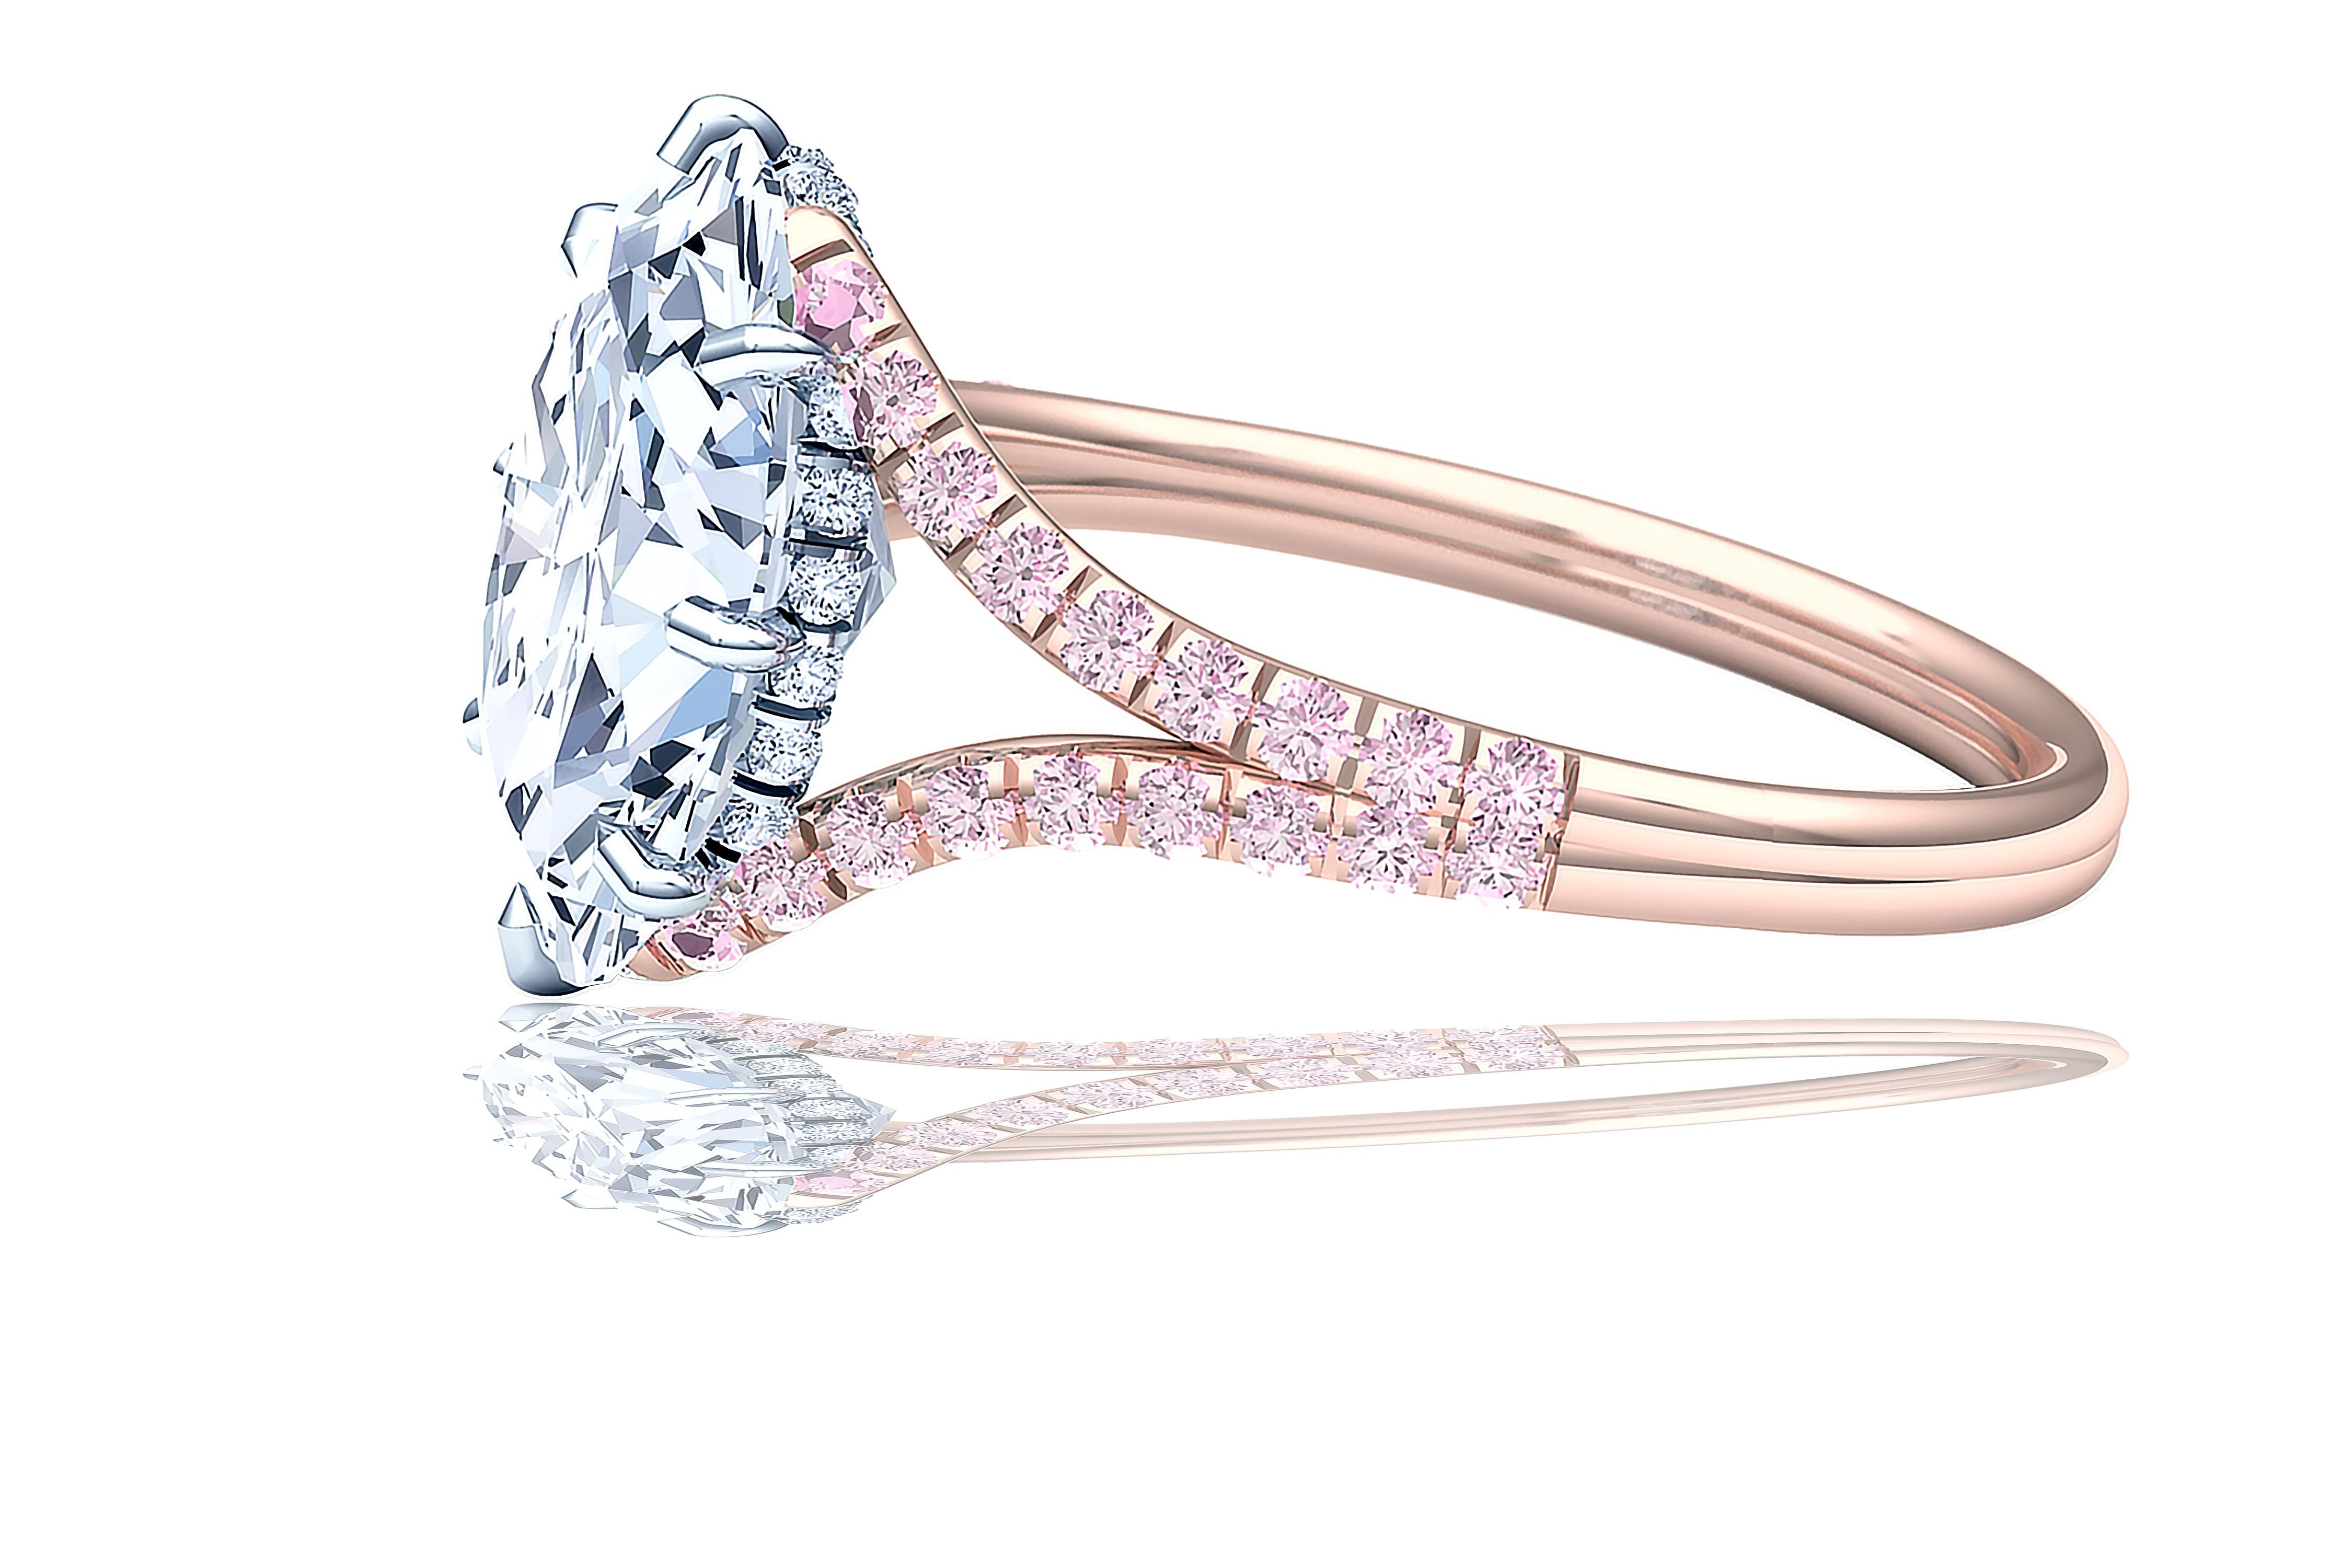 3 carat pink diamond engagement ring